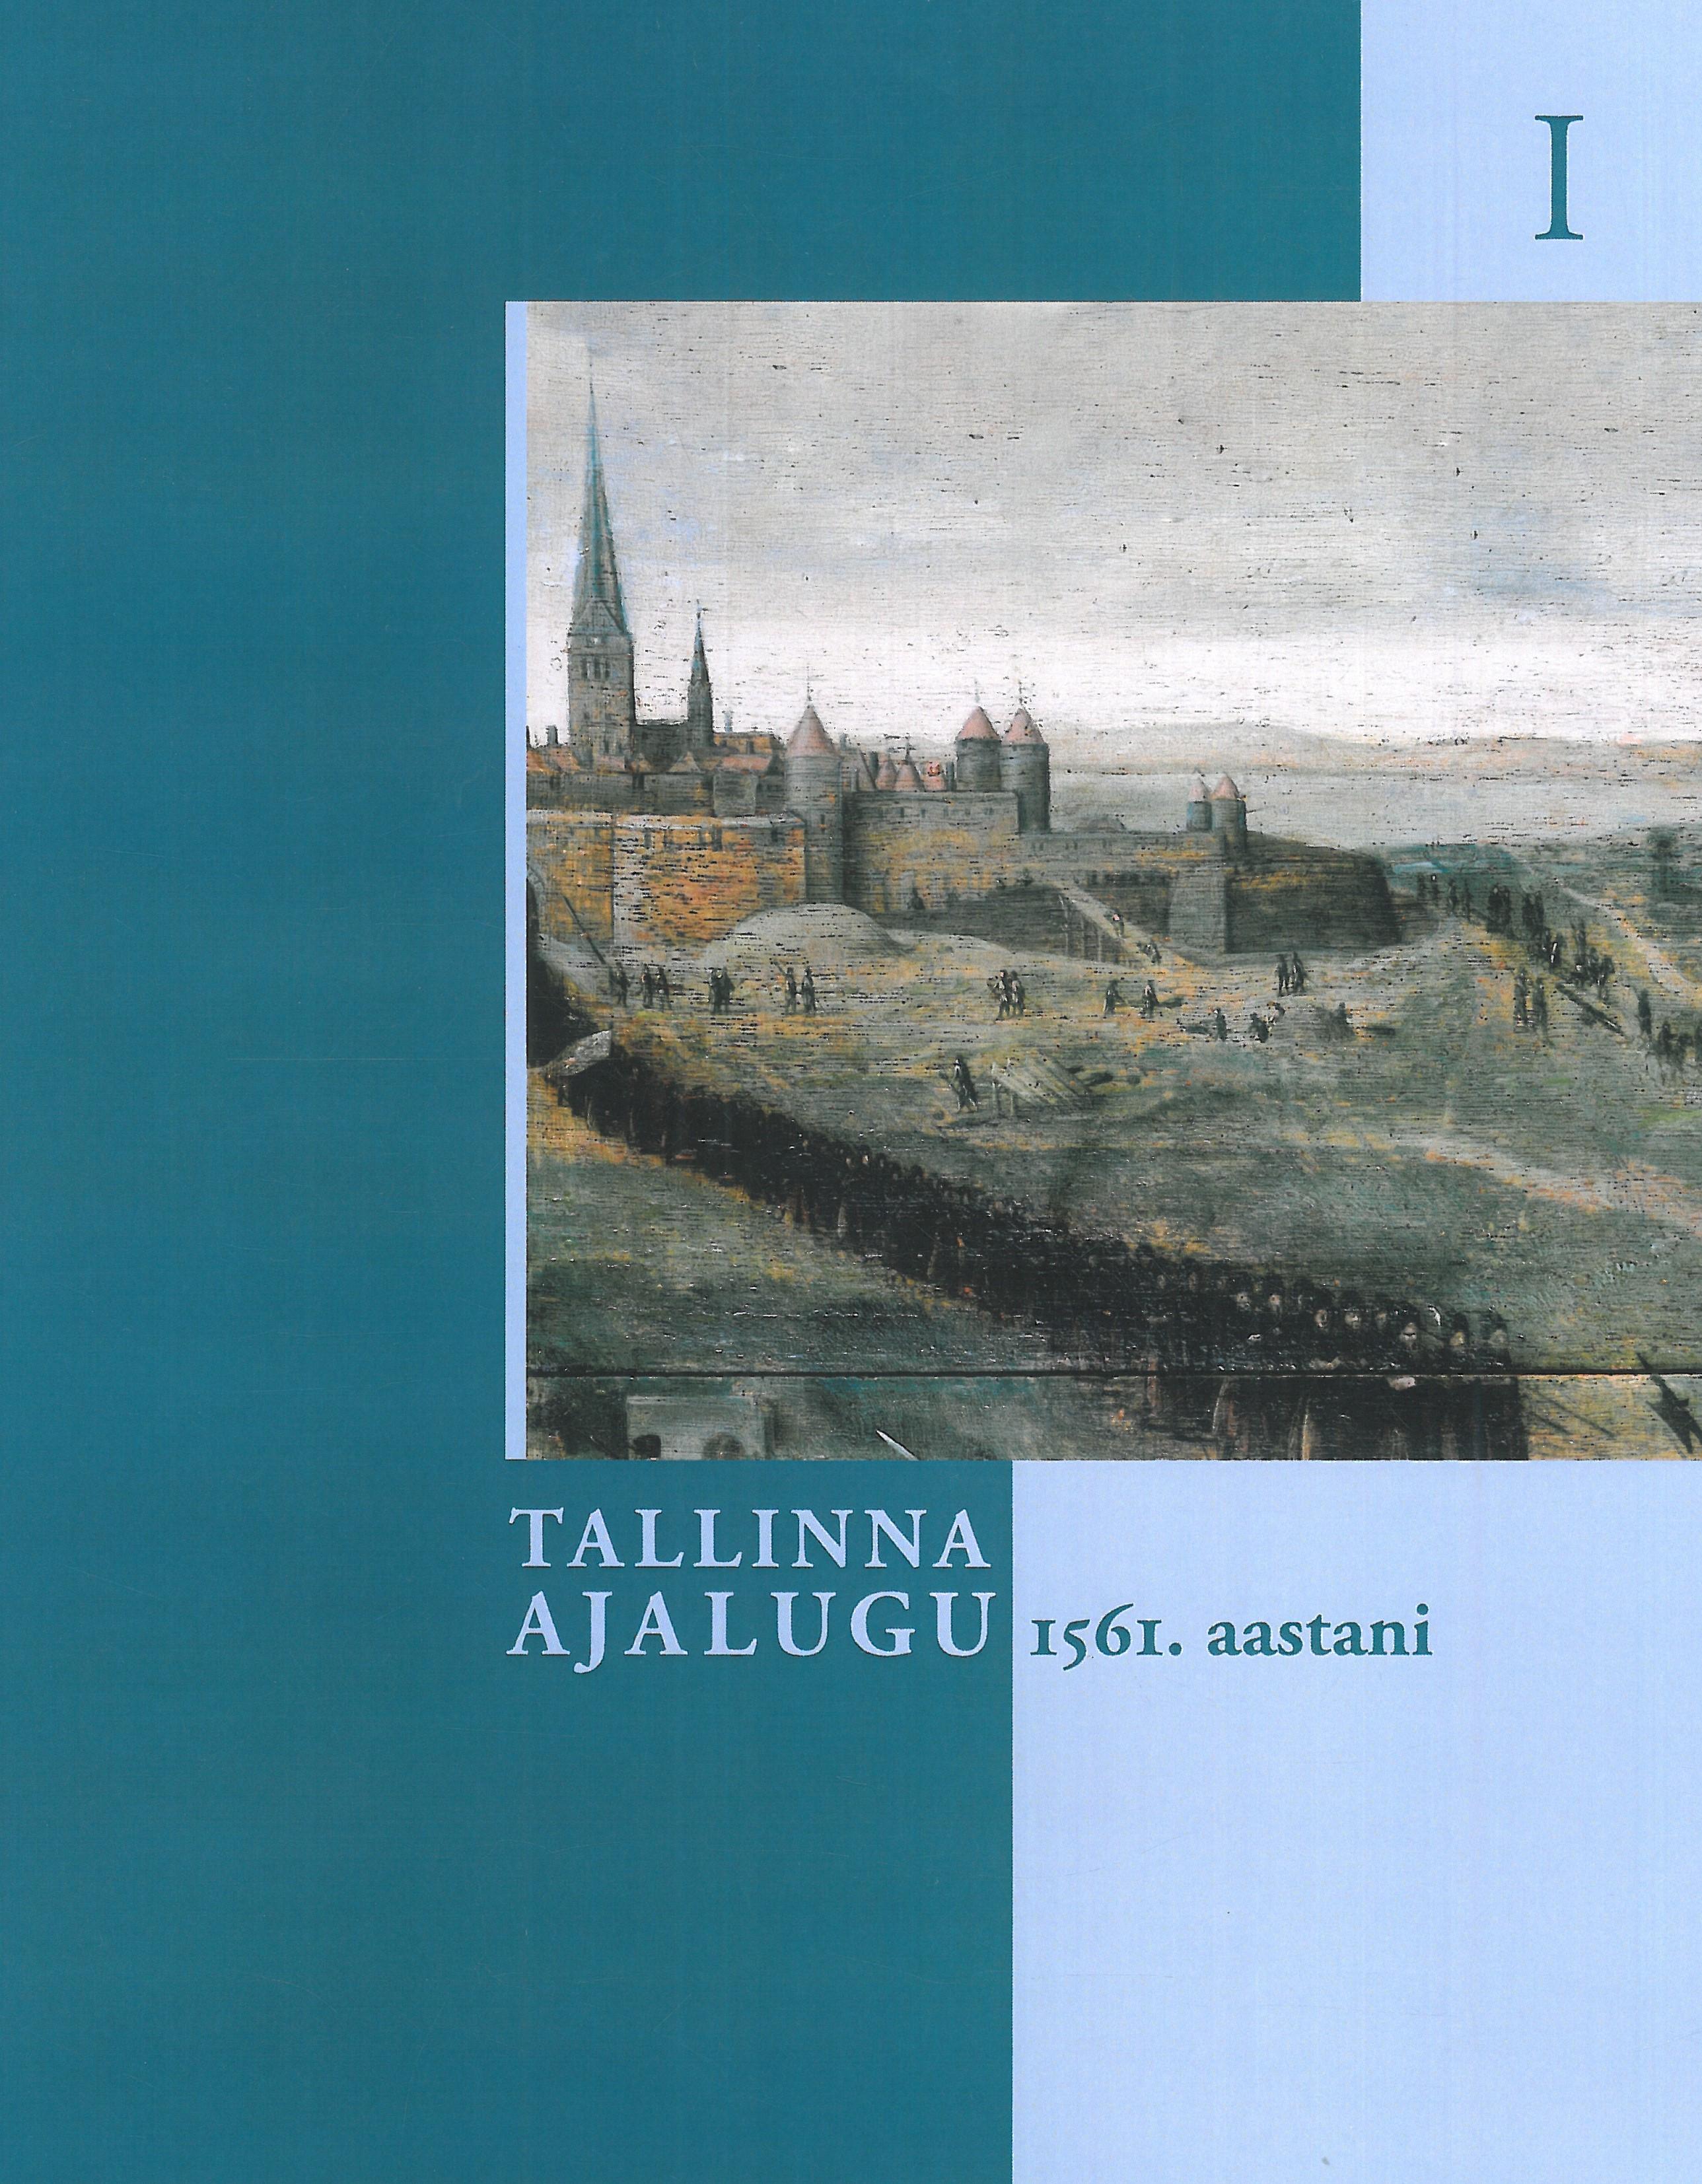 Tallinna ajalugu I köide. 1561. aastani